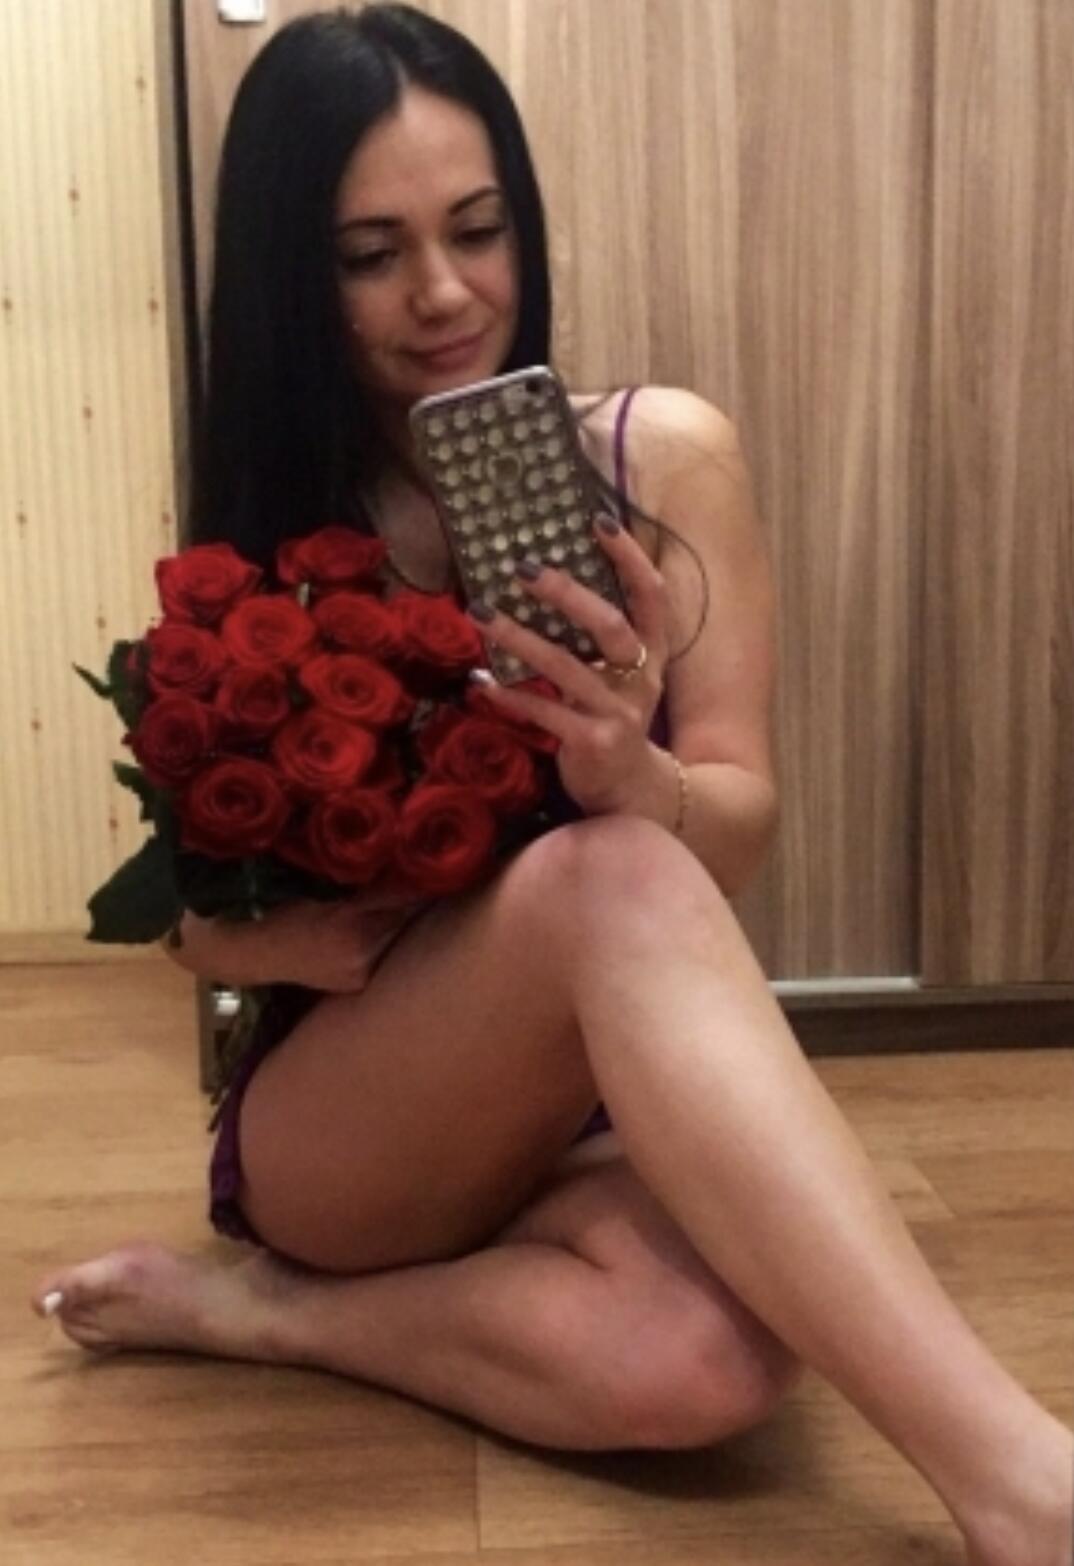 Проститутка Sofiya, фото 1, тел: 0958050425. City Center - Киев